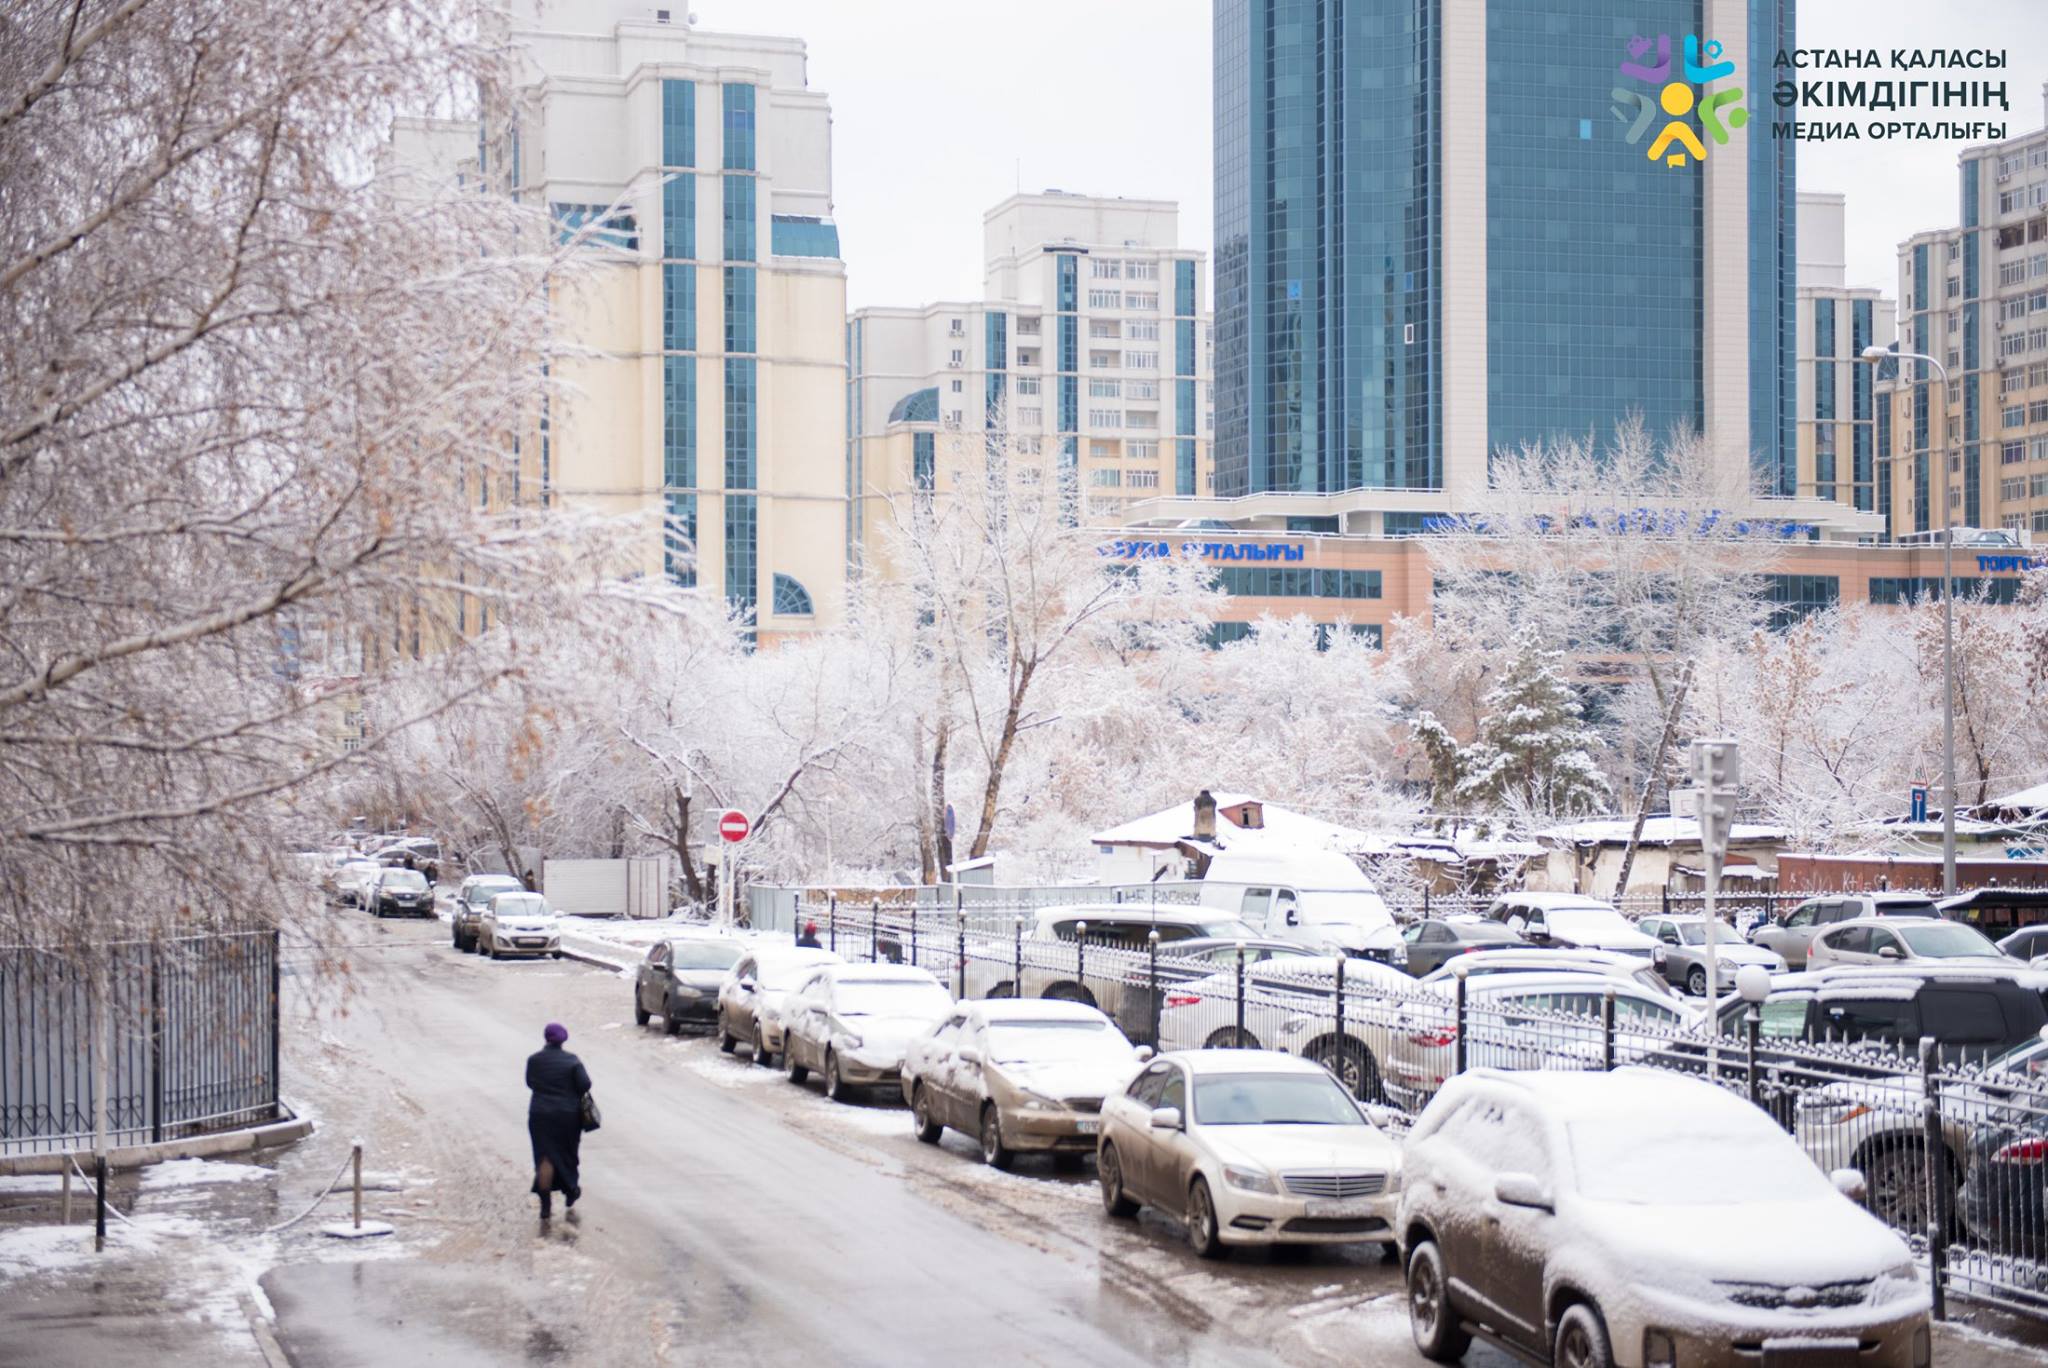 Астана погода какая. Астана зима. Астана зимой. Астана улица имой. Астана правый берег.